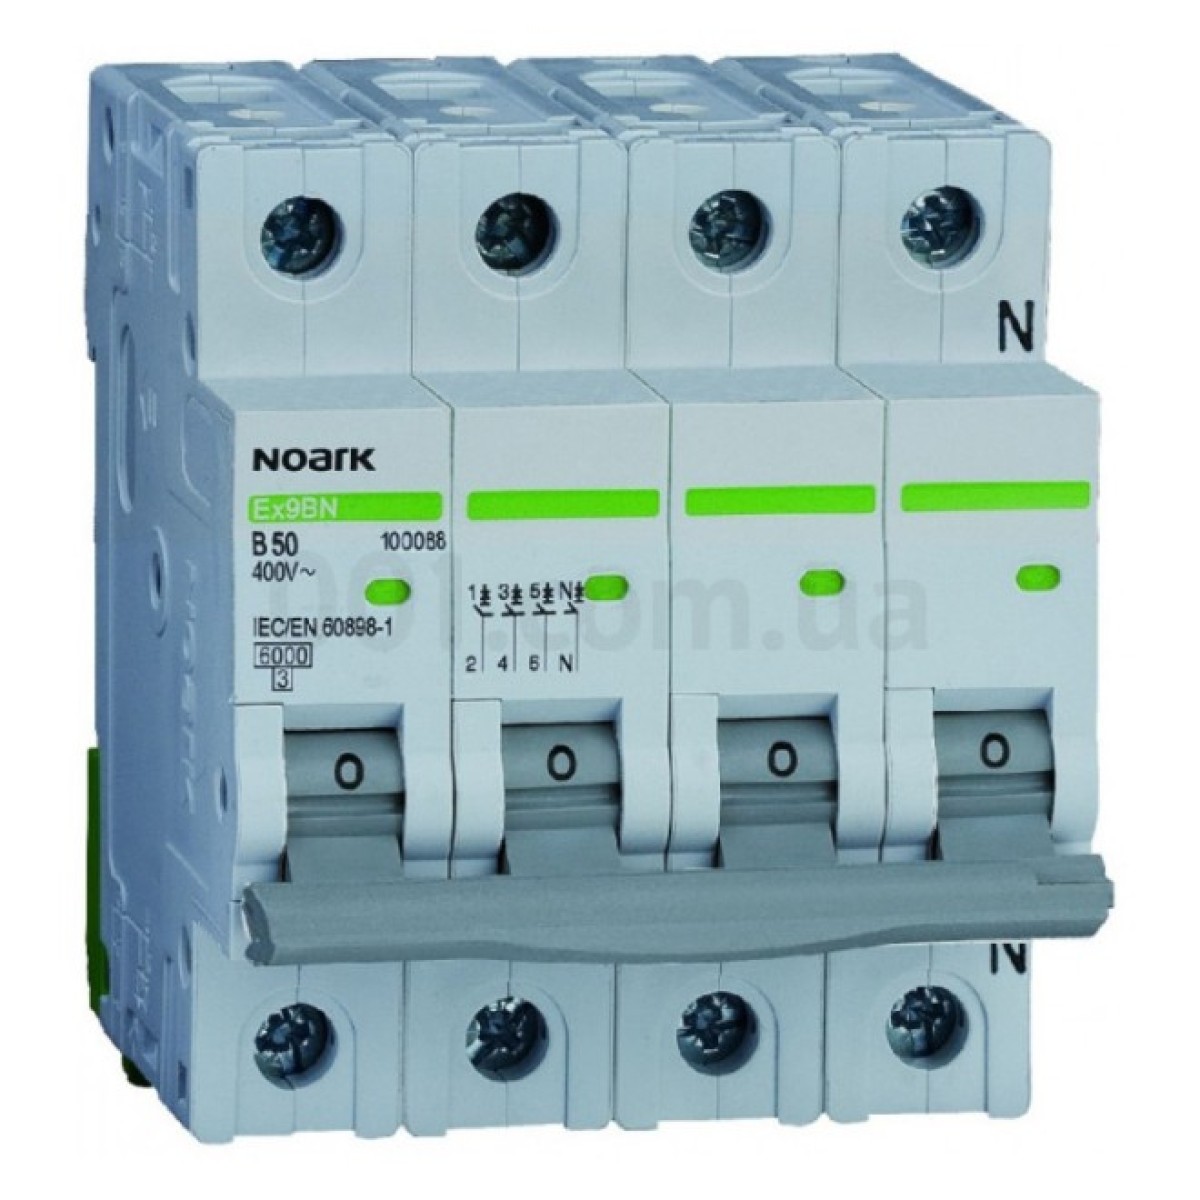 Модульний автоматичний вимикач Ex9BN 6kA хар-ка C 40A 3P+N, NOARK 256_256.jpg